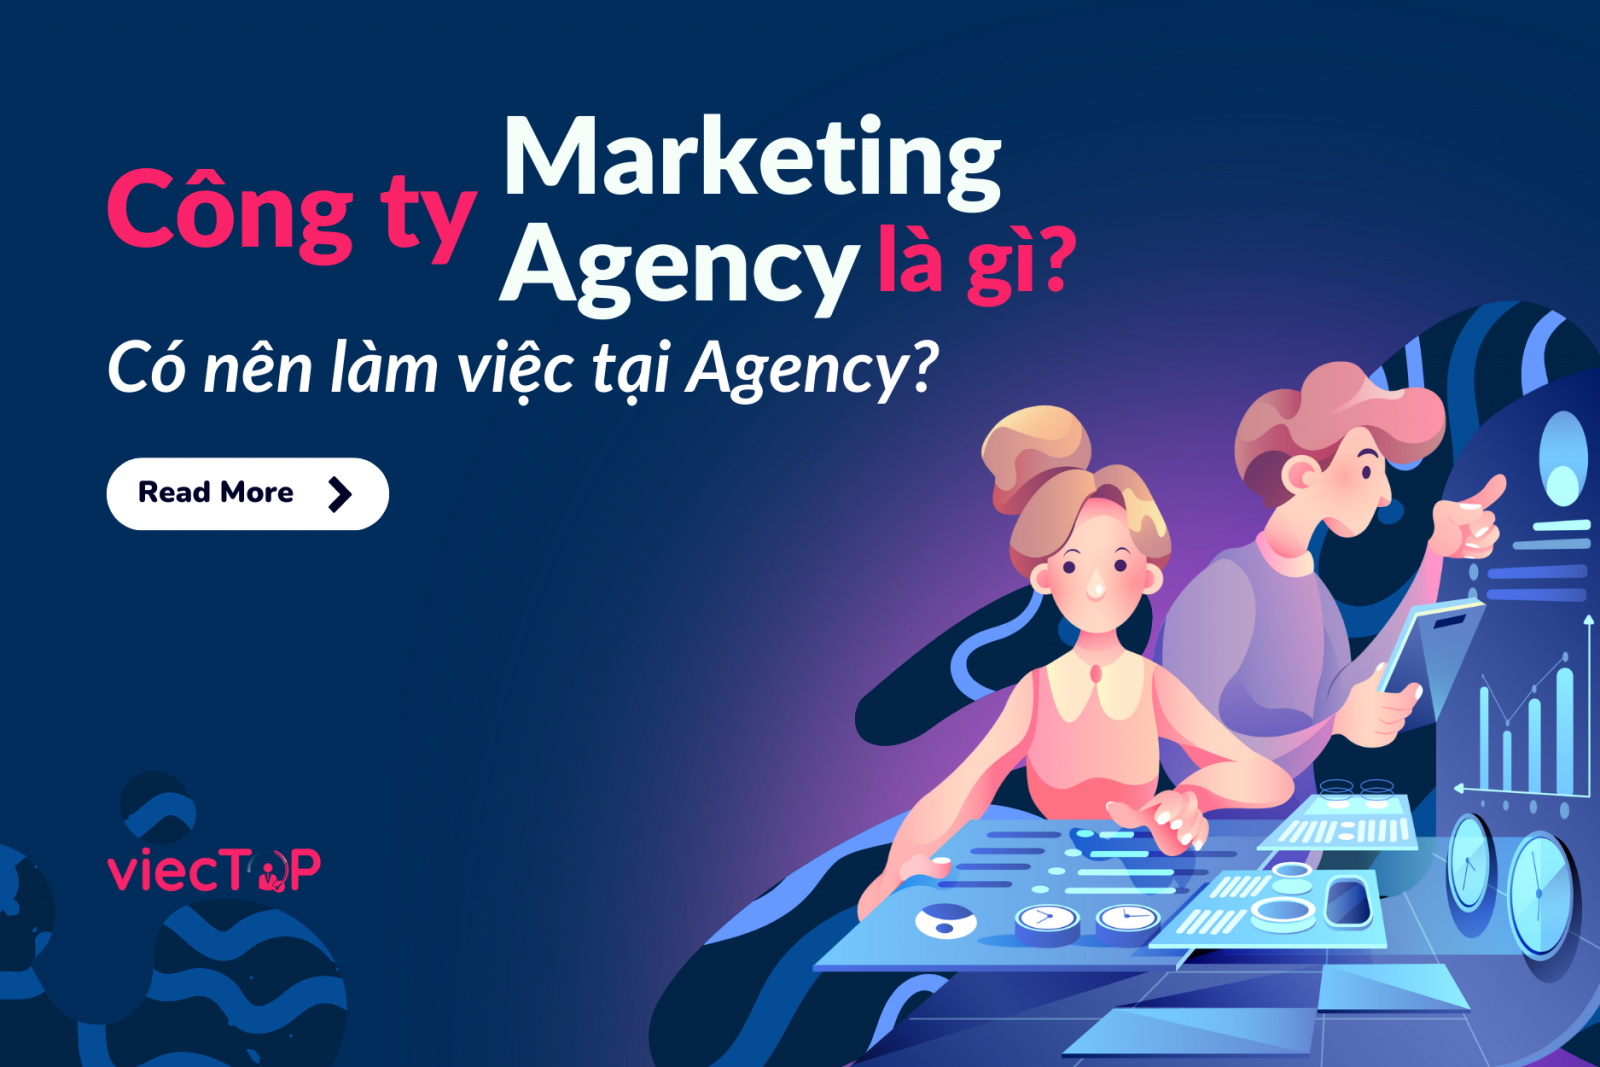 Công ty Marketing Agency là gì? Có nên làm việc tại agency?